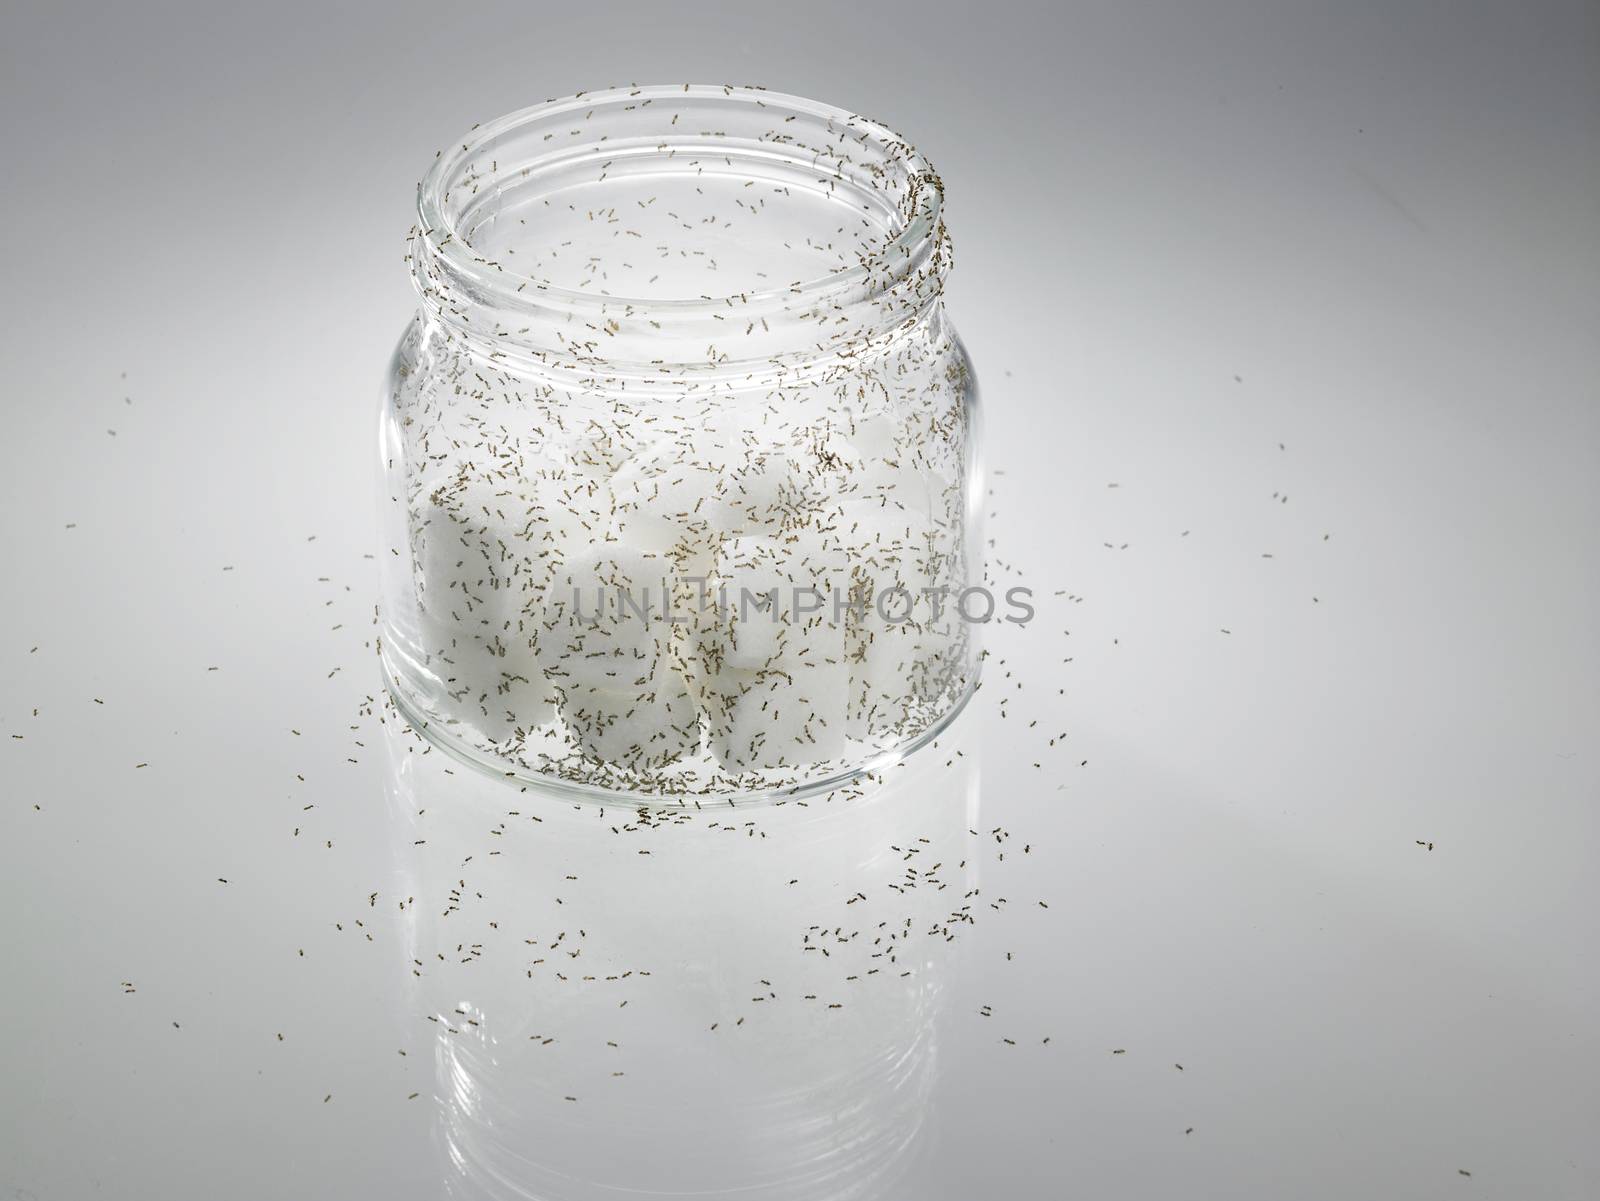 sugar with ants by eskaylim